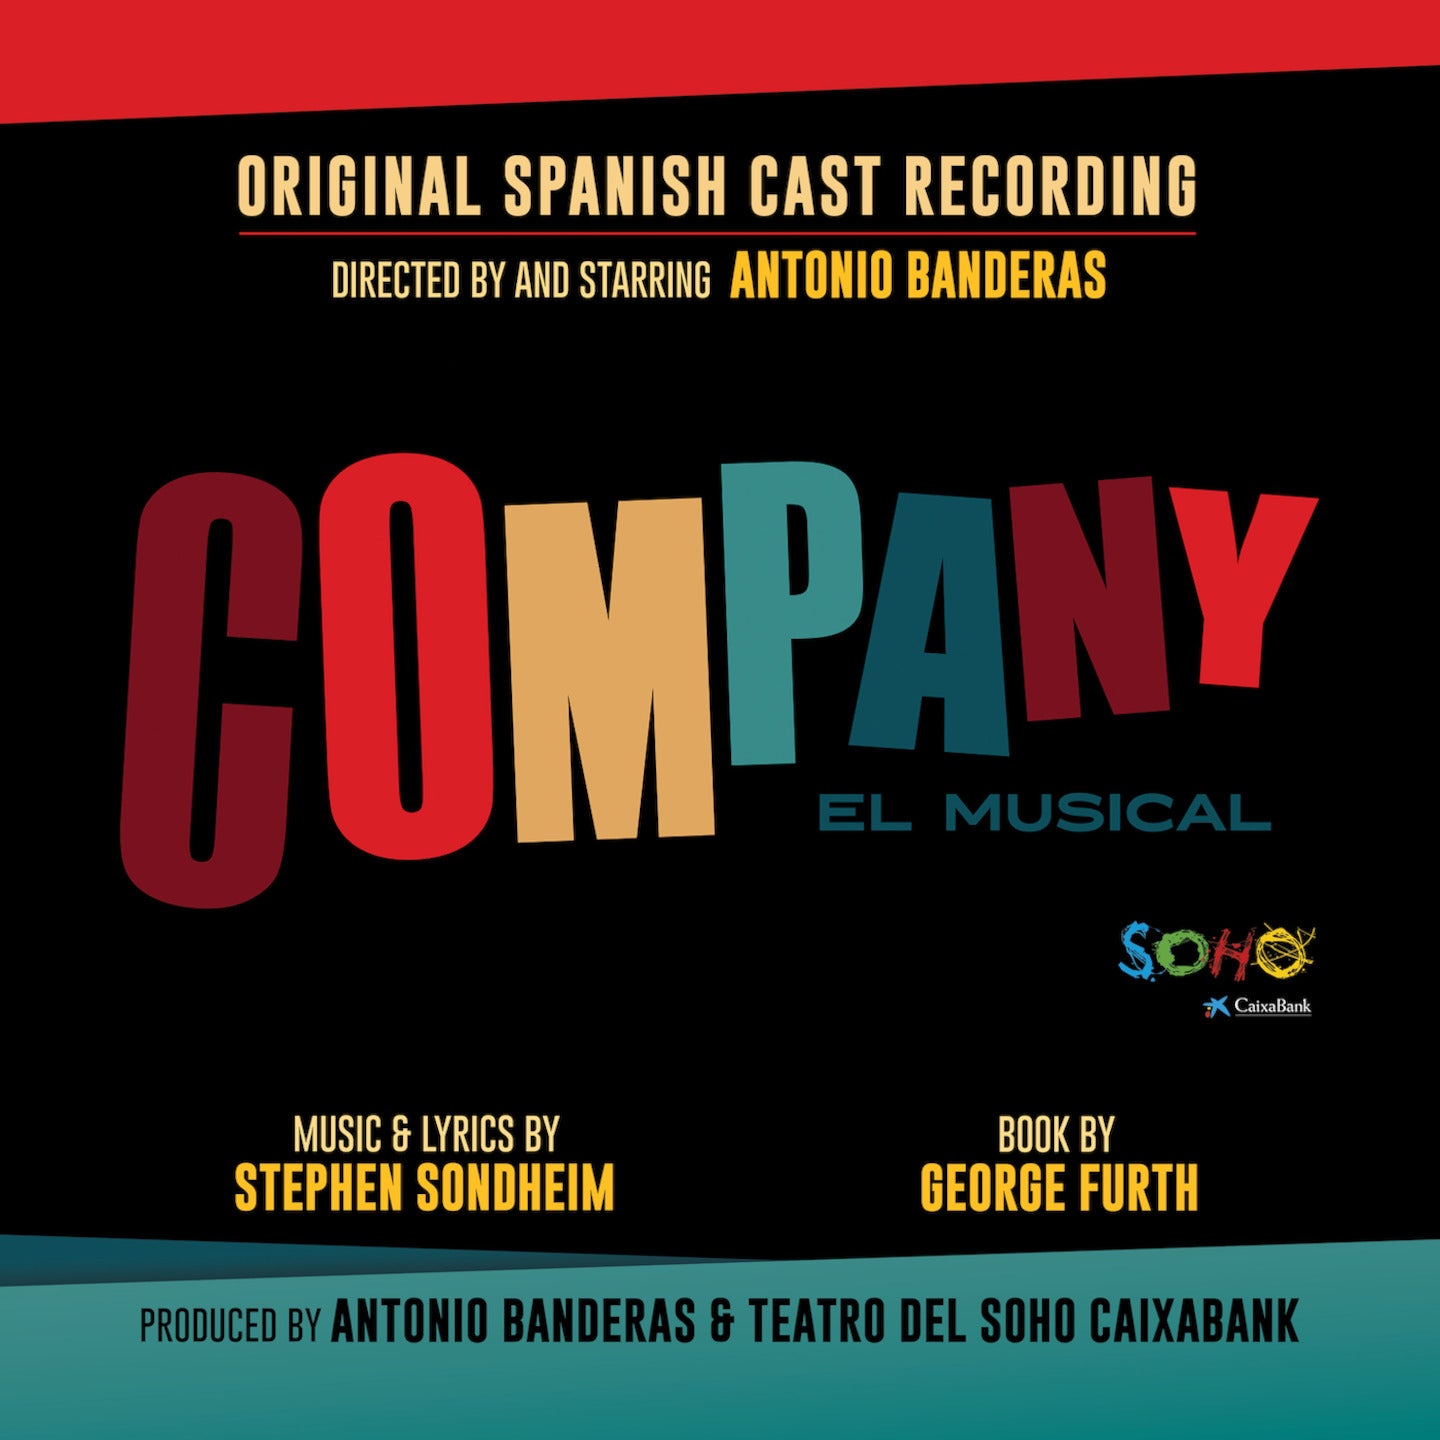 Featured image for “COMPANY (ORIGINAL SPANISH CAST RECORDING) [Digital Album]”